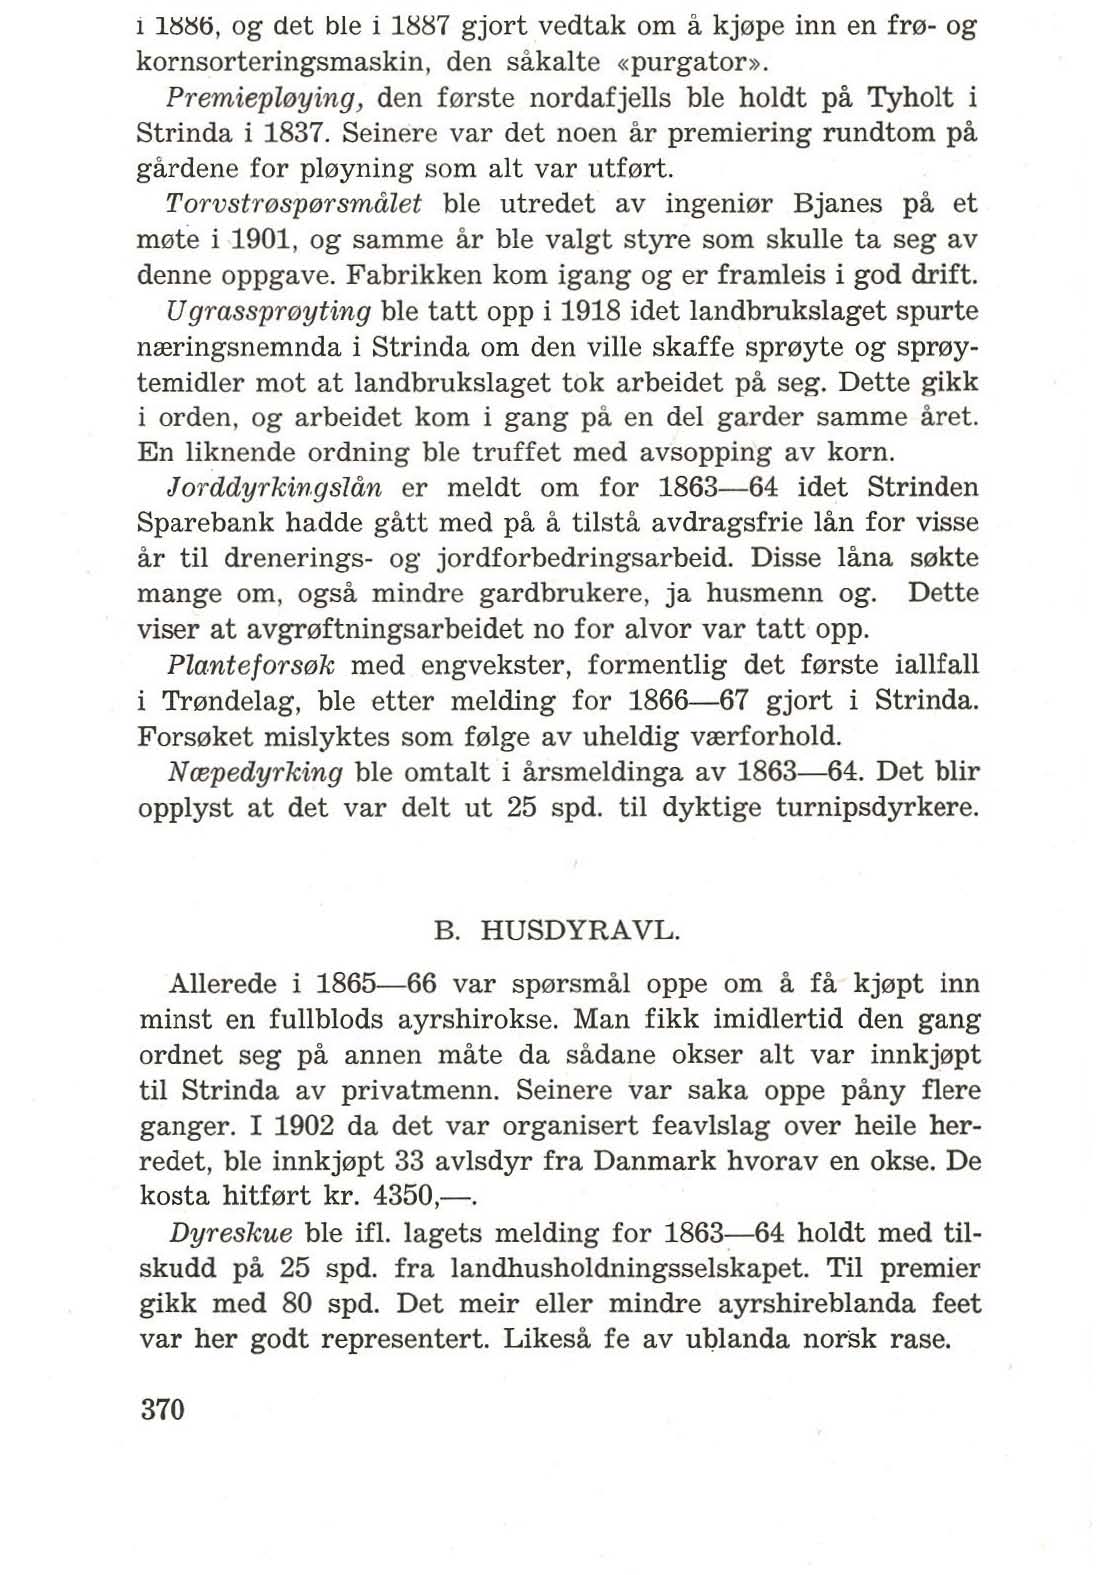 1 US~ti, og det ble i 1iiii7 gjort vedtak om a kj0pe inn en fr0- og kornsorteringsmaskin, den sakalte «purgator». Premiepll!Jying, den f0rste nordafjells ble holdt pa Tyholt i Strinda i 1837.